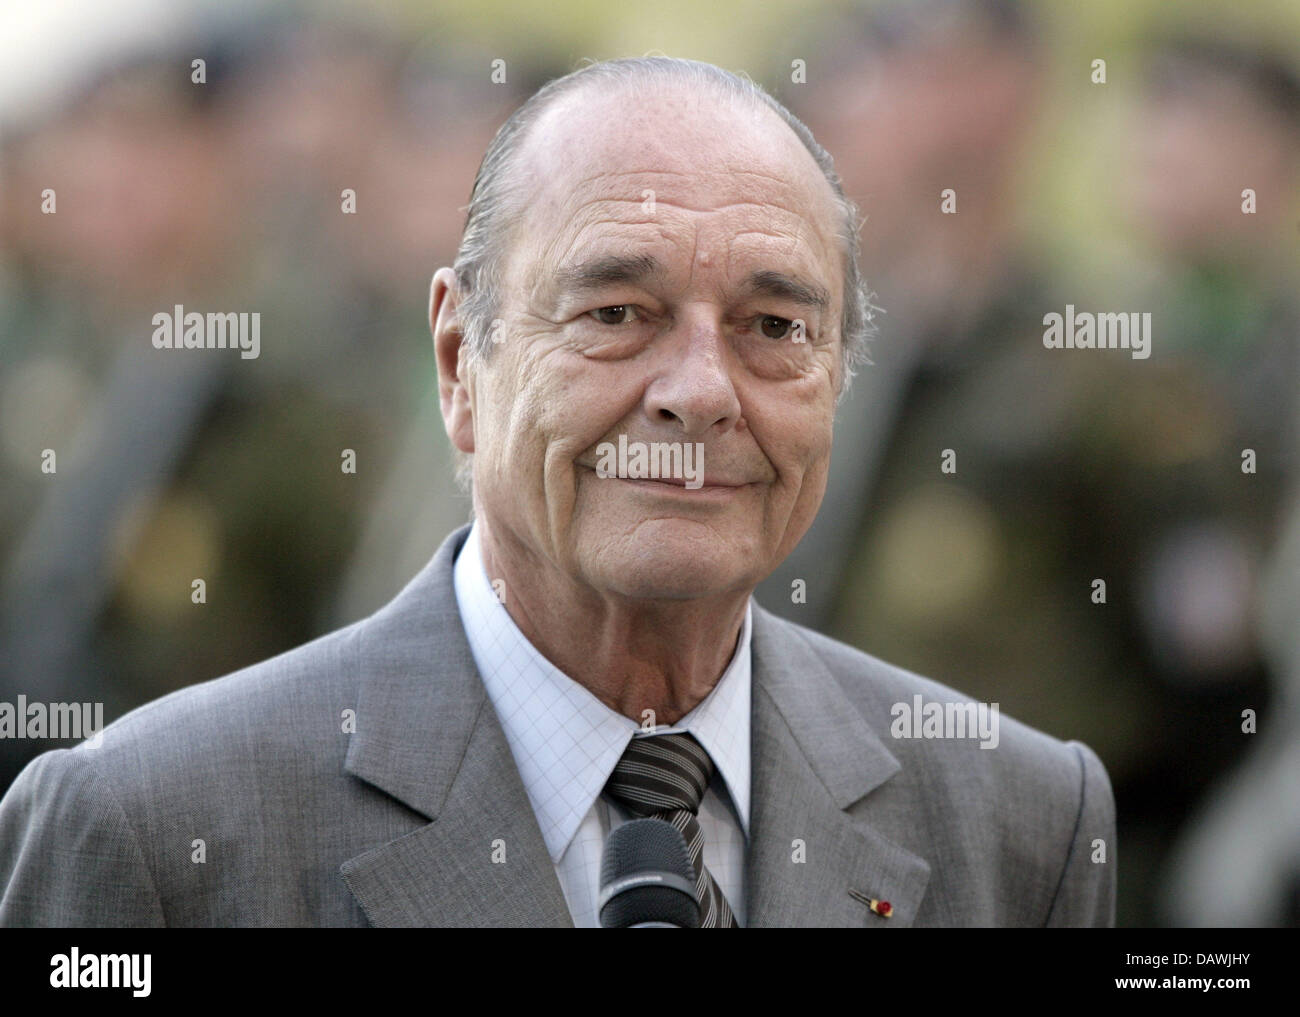 Il troncaggio il presidente francese Jacques Chirac sorride davanti della cancelleria a Berlino, il 3 maggio 2007. Chirac ha pagato il suo addio visita a Berlino. Foto: Peer Grimm Foto Stock